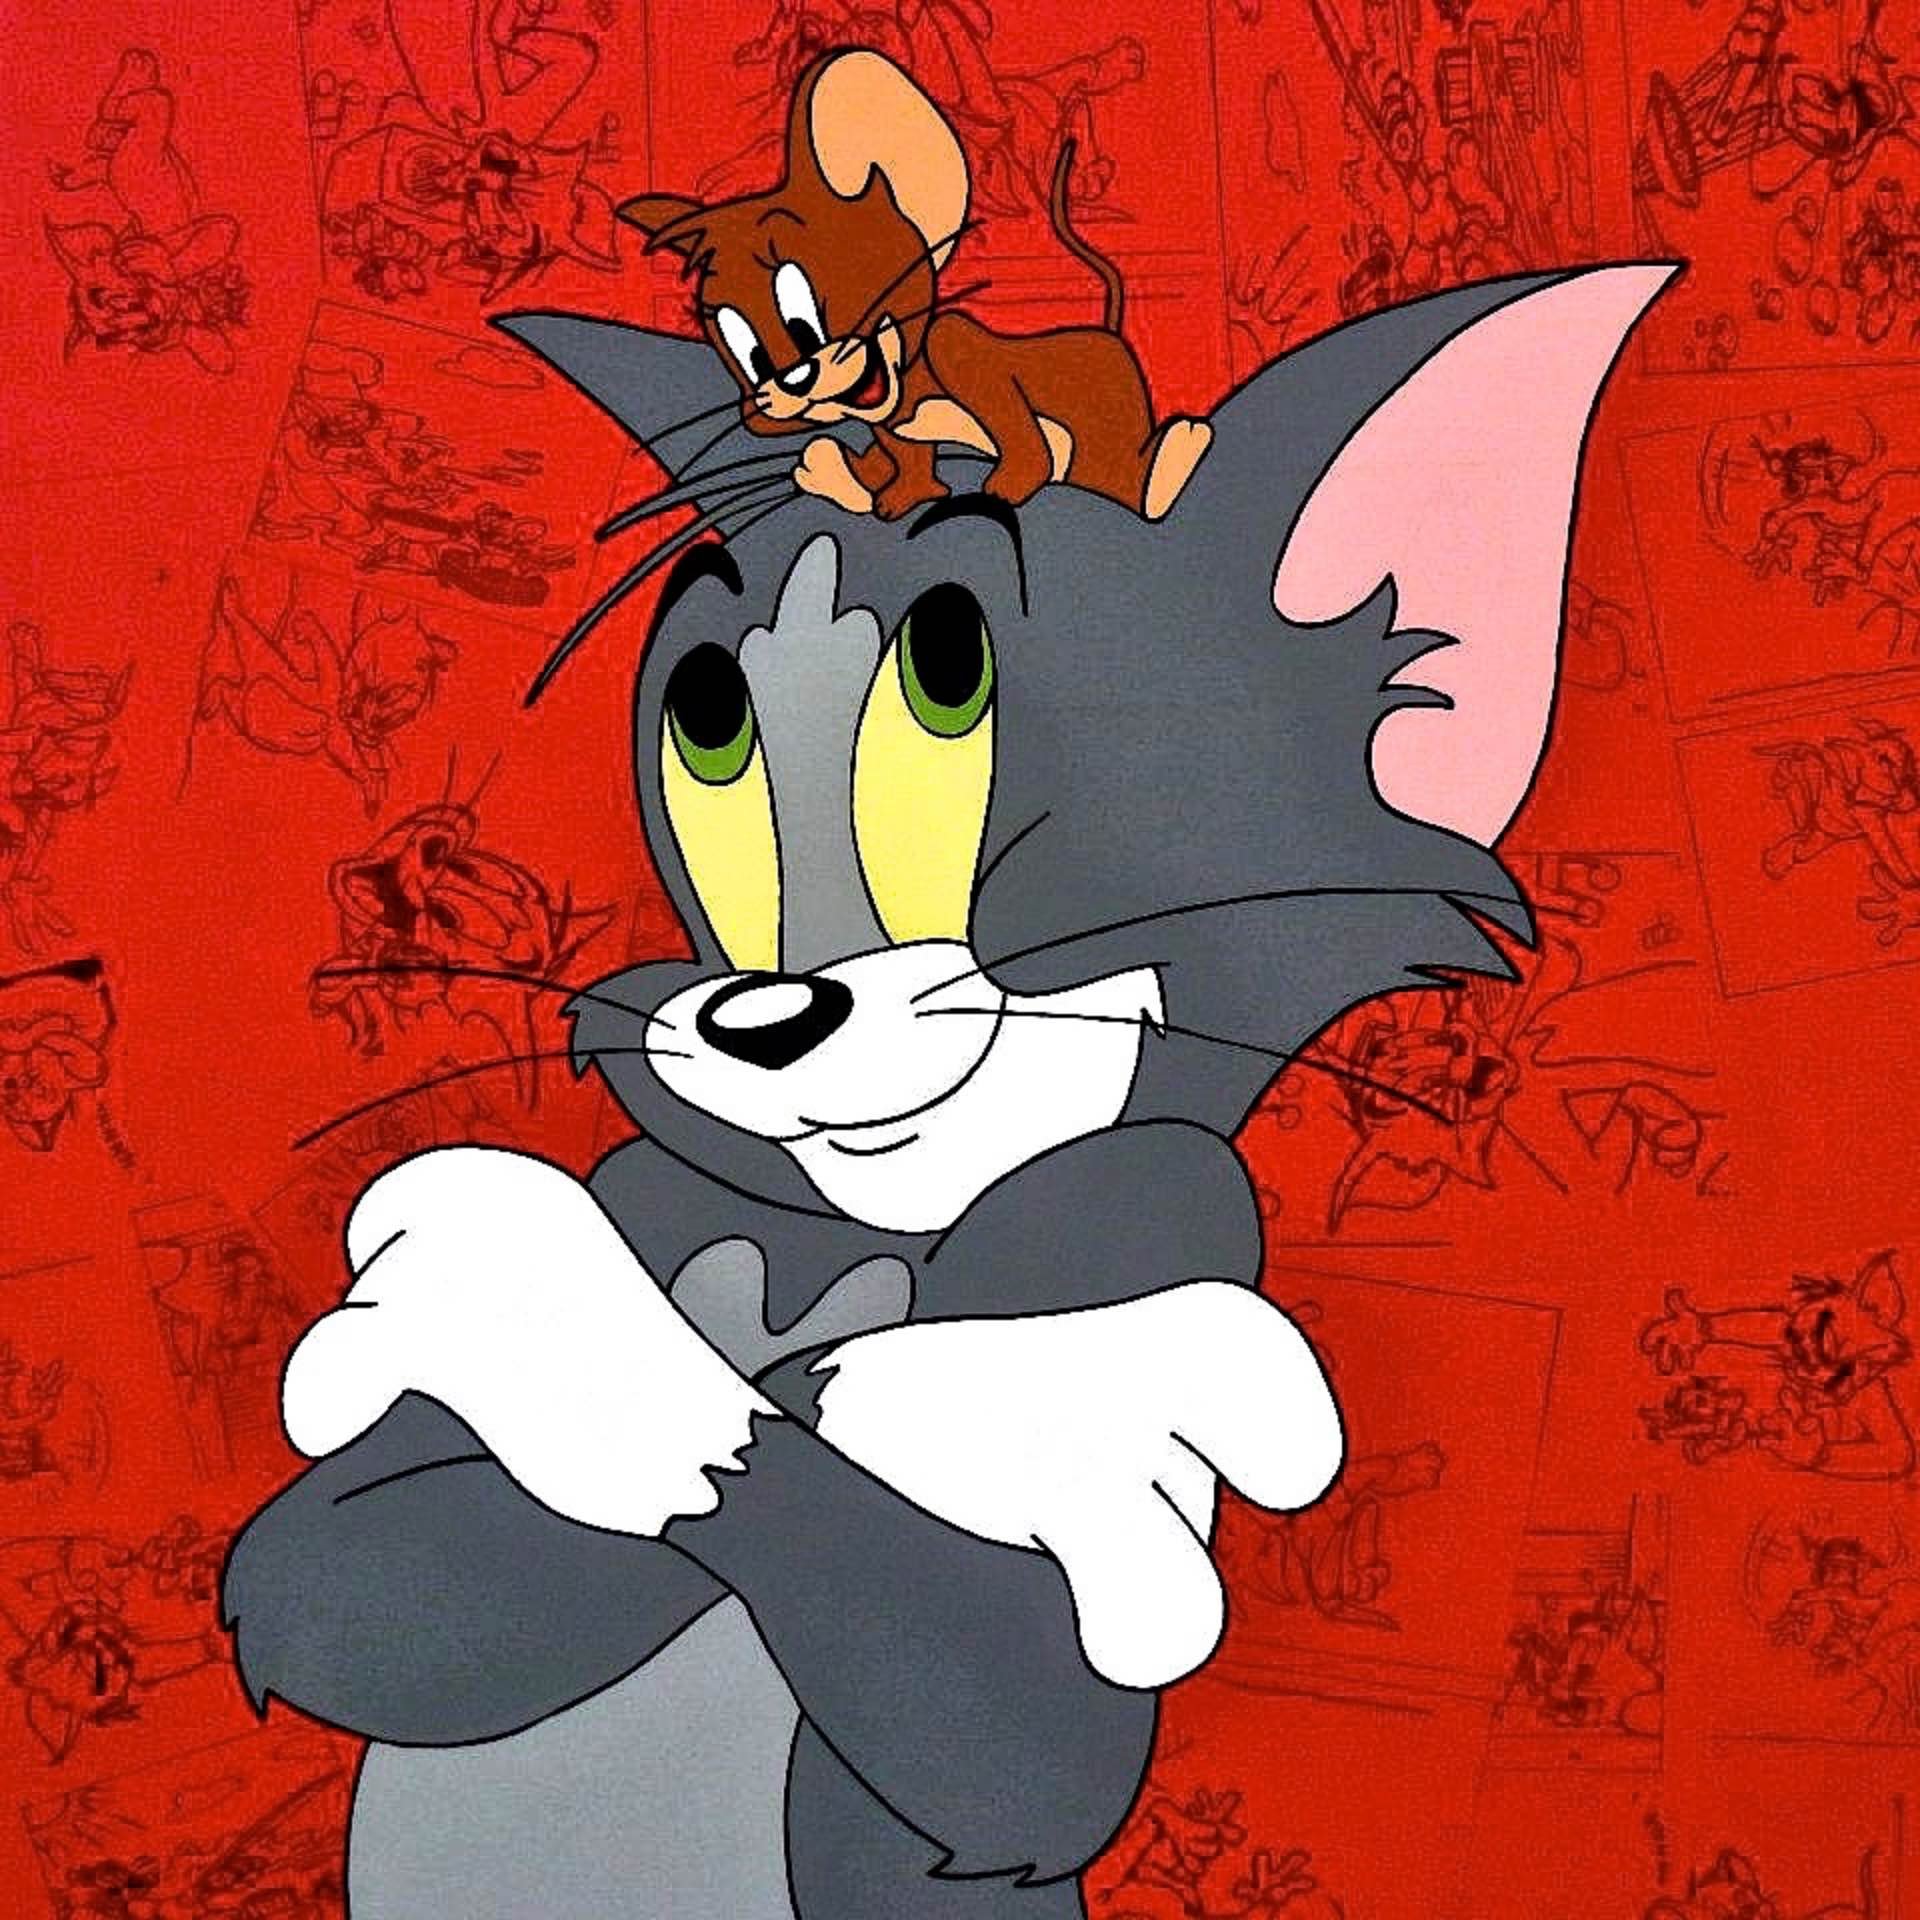 Jerry том и джерри. Том и Джерри. Том и Джерри Джерри. Том и Джерри Tom and Jerry. Том и Джерри 1960.